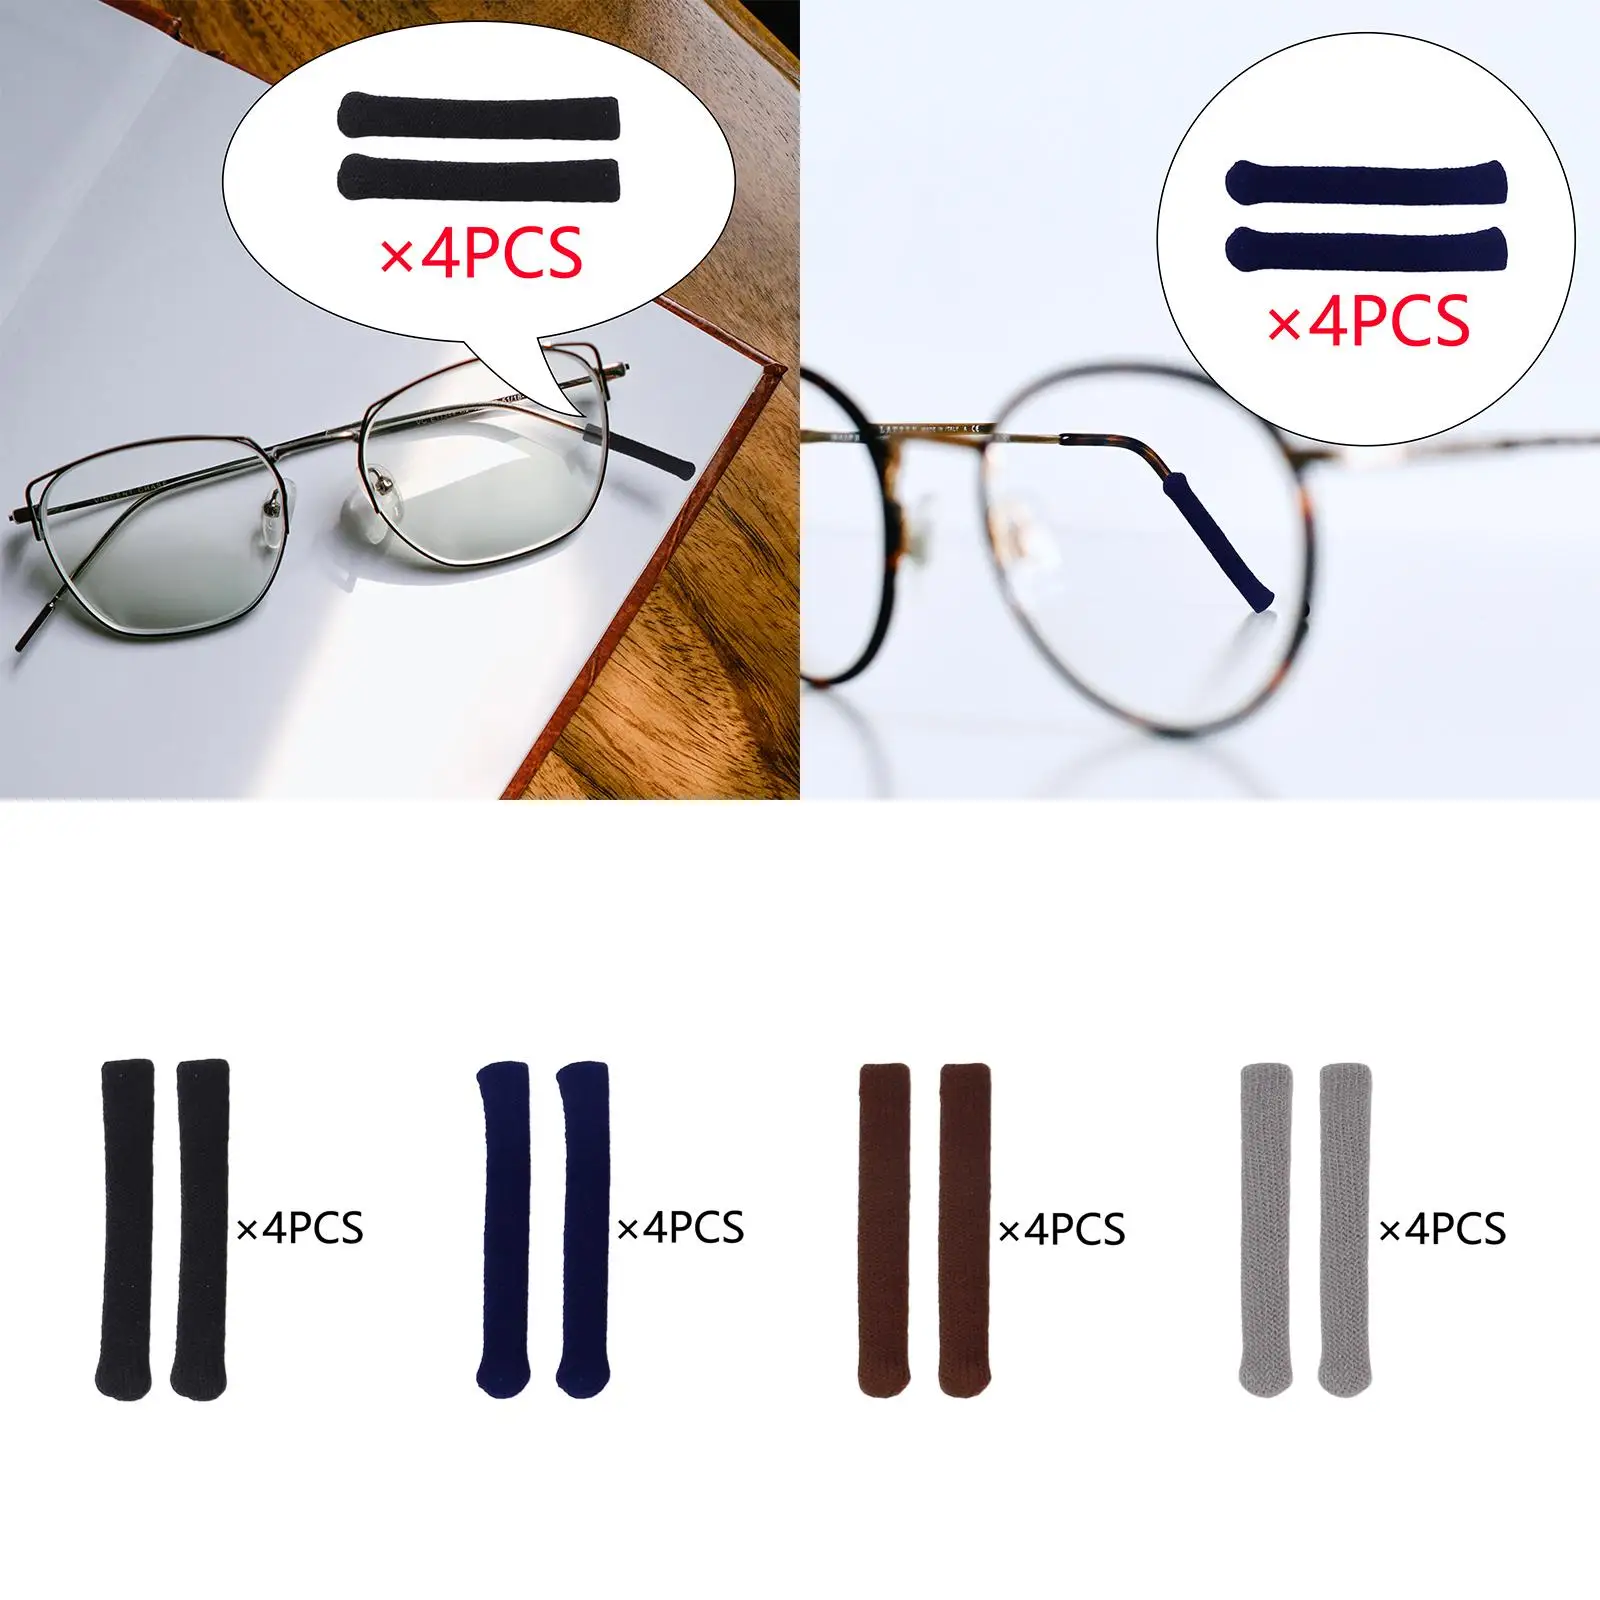 4 Pairs Eyeglasses Temple Tip Sleeve Retainer Anti Slip Comfortable Elastic Eyeglasses Ear Grips Cushions for Eyewear Eyeglasses